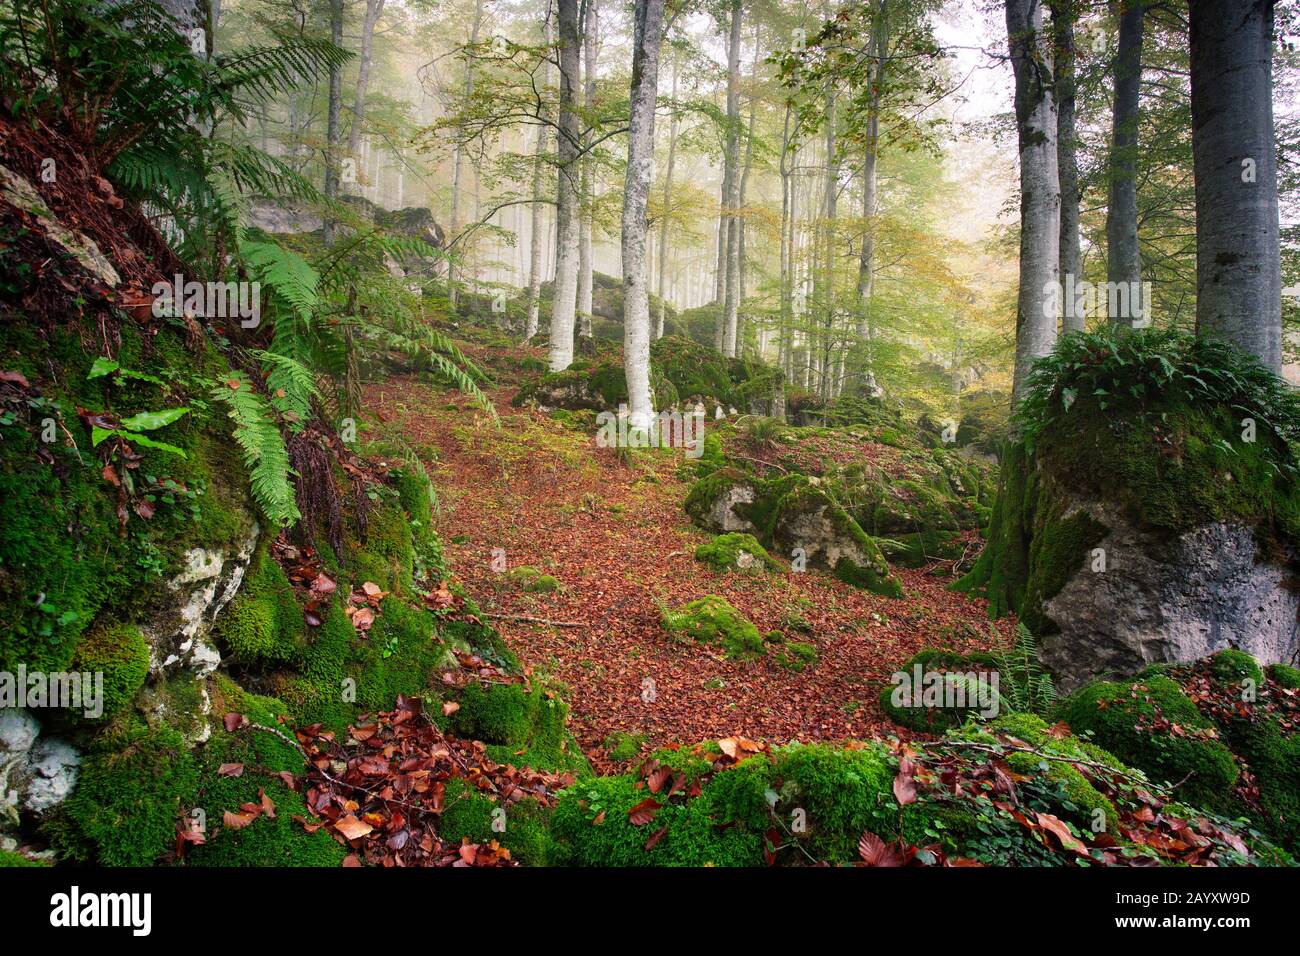 20 Ottobre 2018. Fotografia scattata nella Foresta incantata del Parco Naturale di Urbasa e Andia (Navarra). Foto Stock